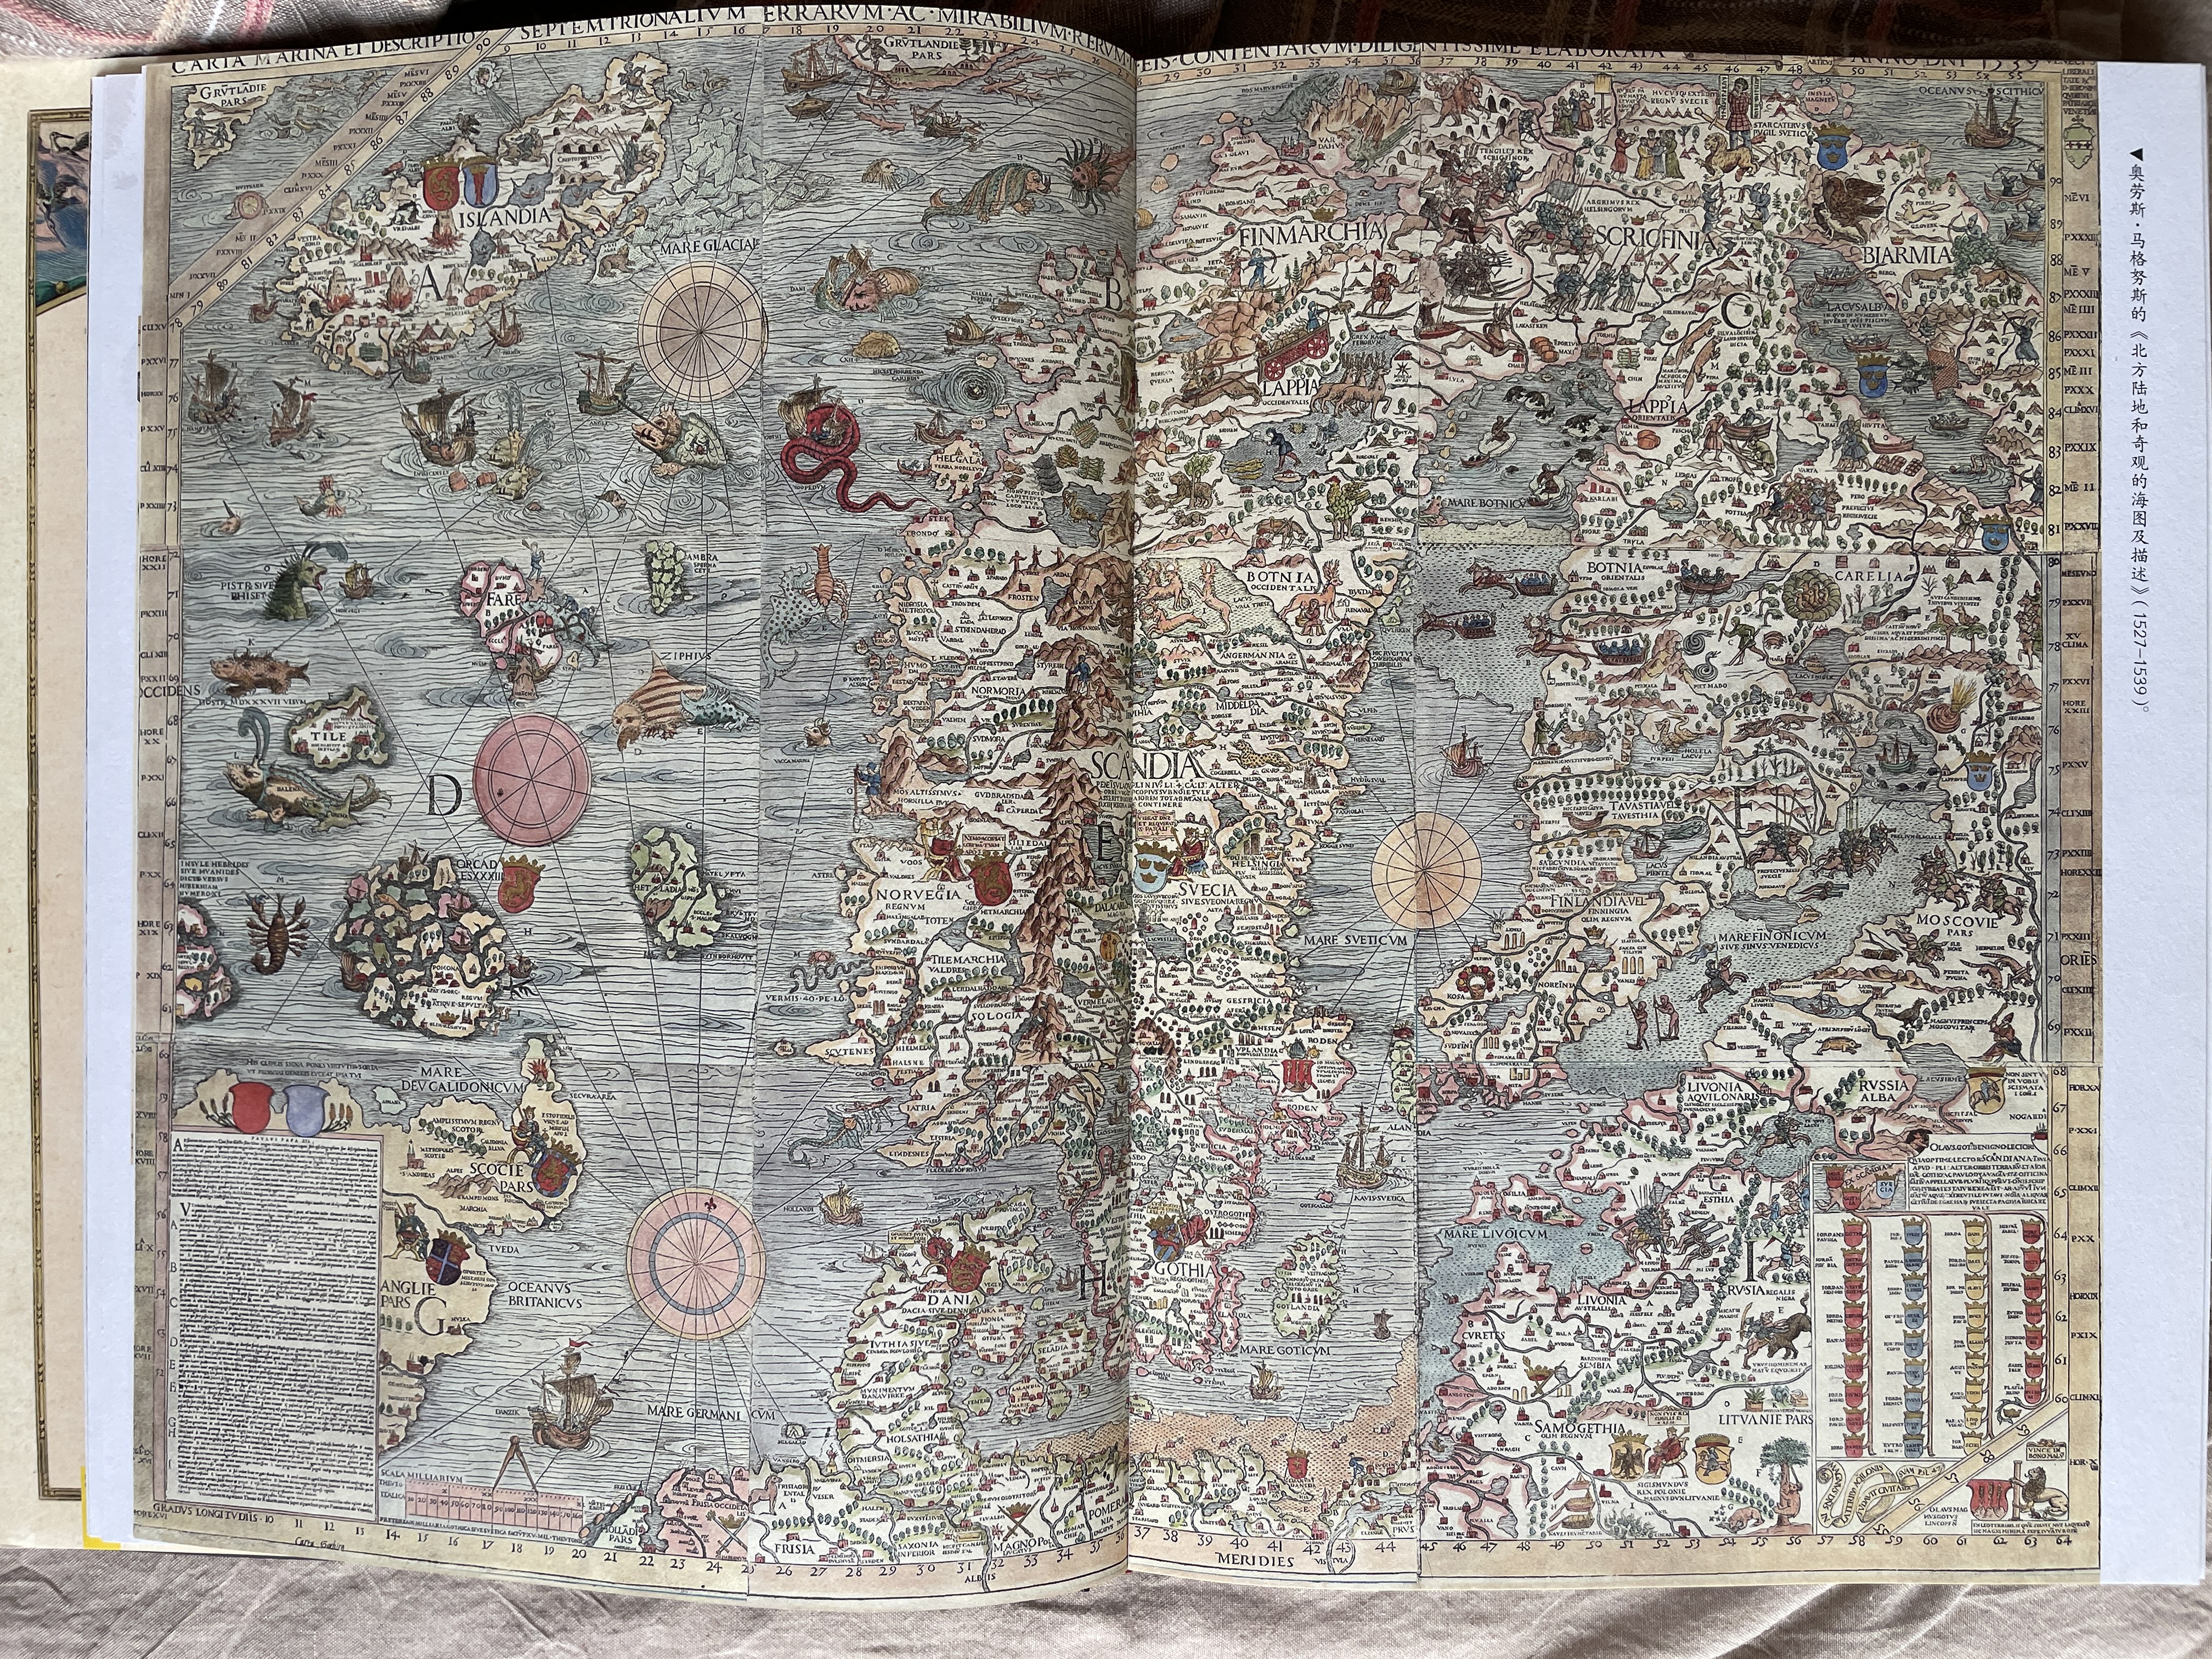 繪製於1539年的斯堪的納維亞地區海圖